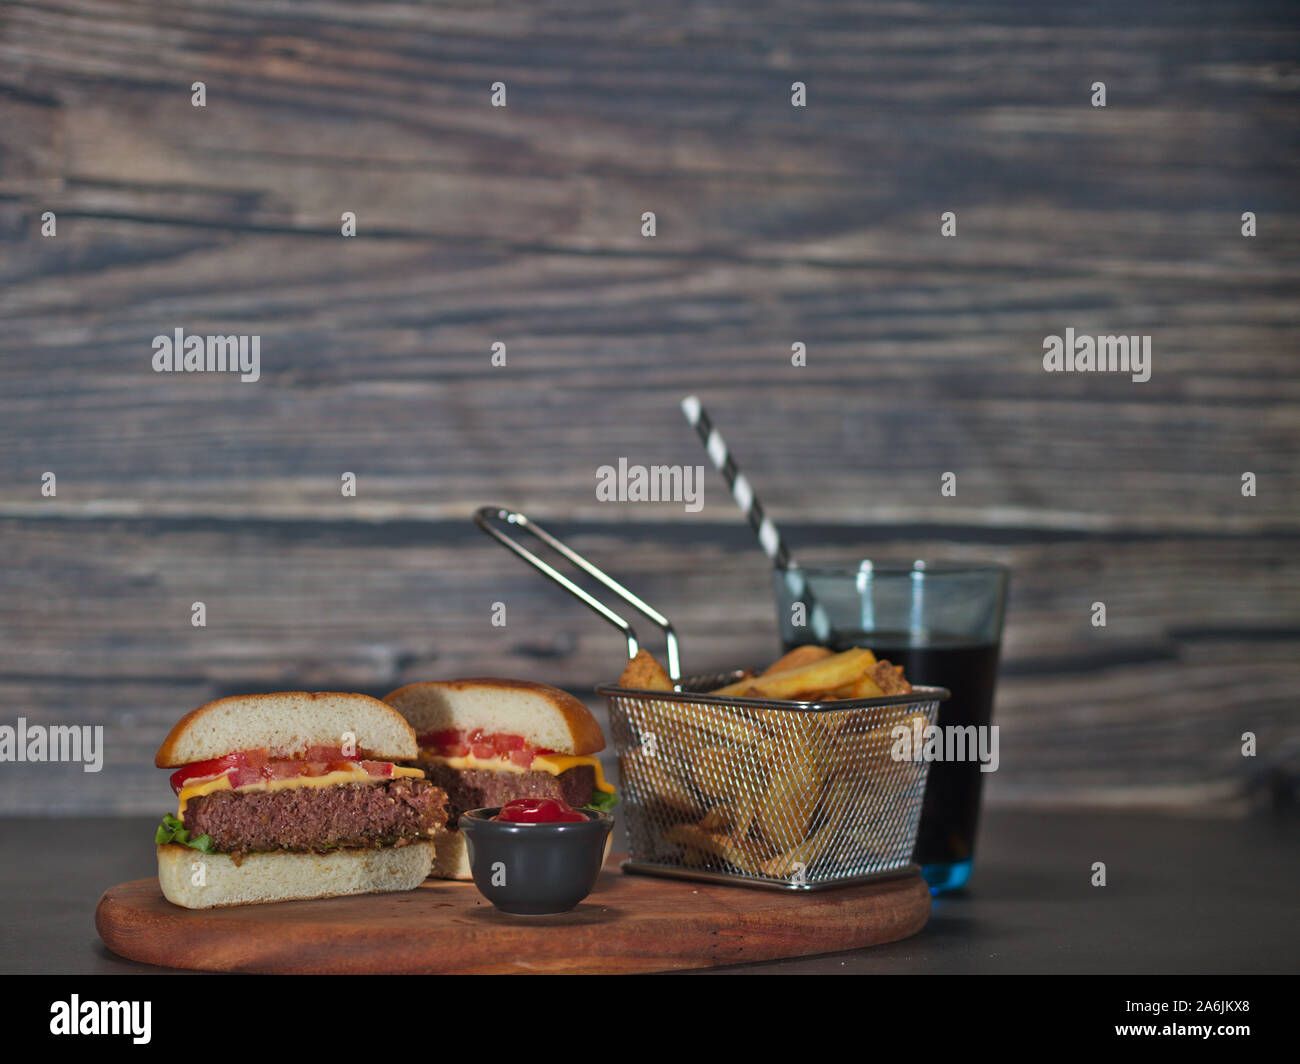 Vegan impianto basato burger tagliato a metà con patate fritte servite su vassoio in legno Foto Stock